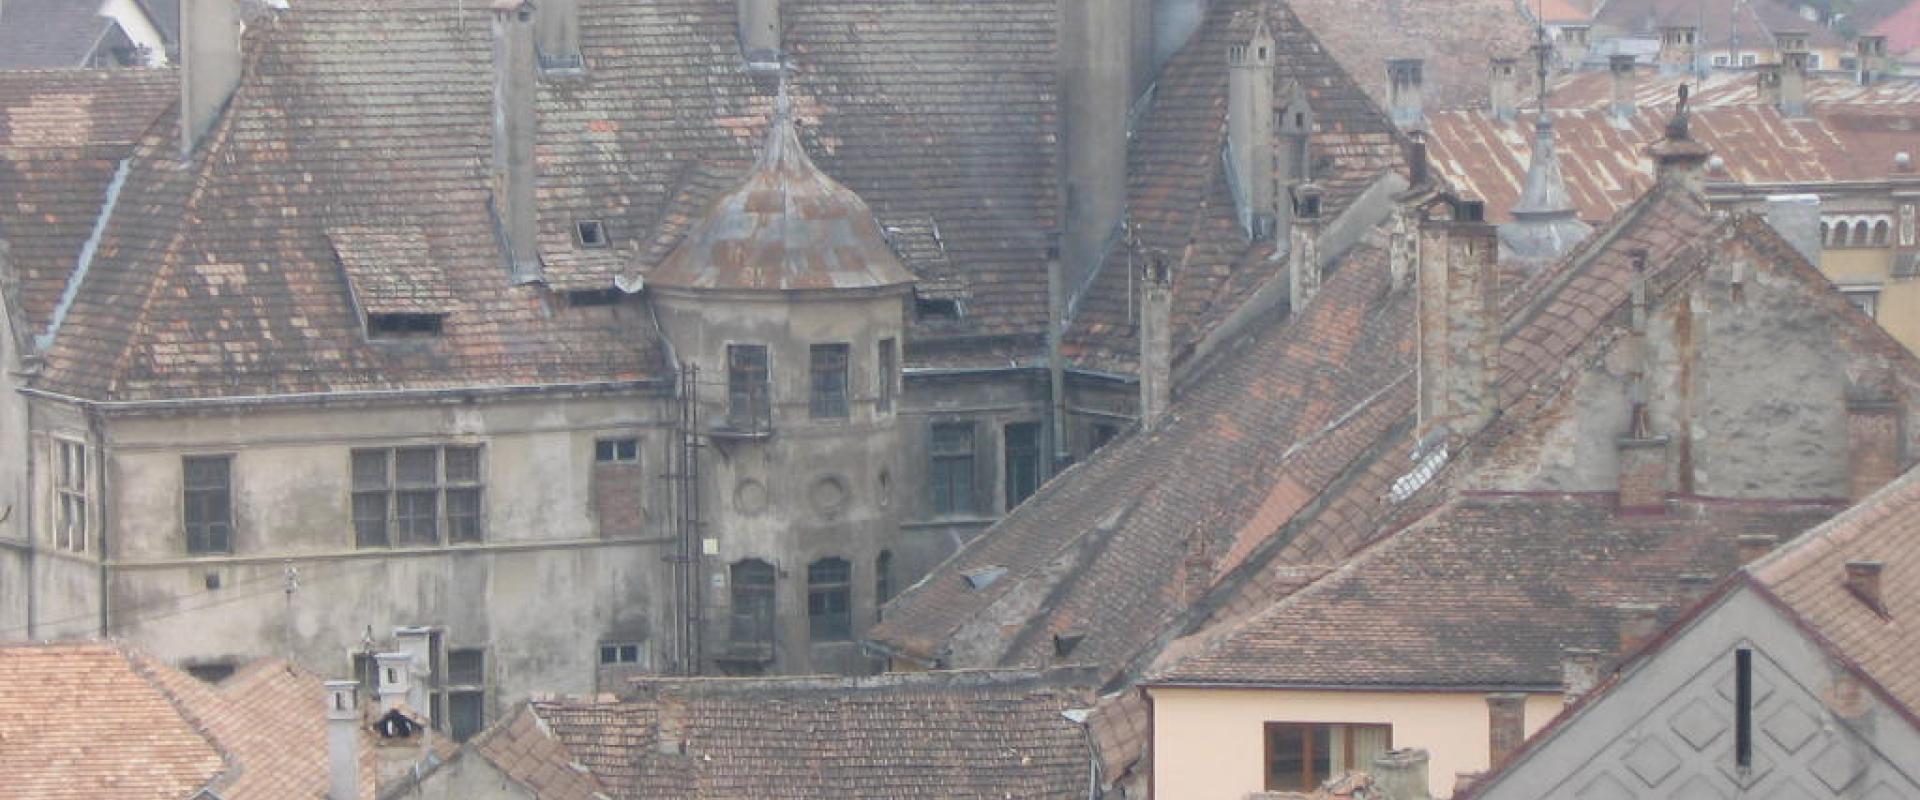 Blick über die Dächer der Altstadt von Schaßburg Rumänien, mit verwitterten Gebäuden und Ziegeldächern